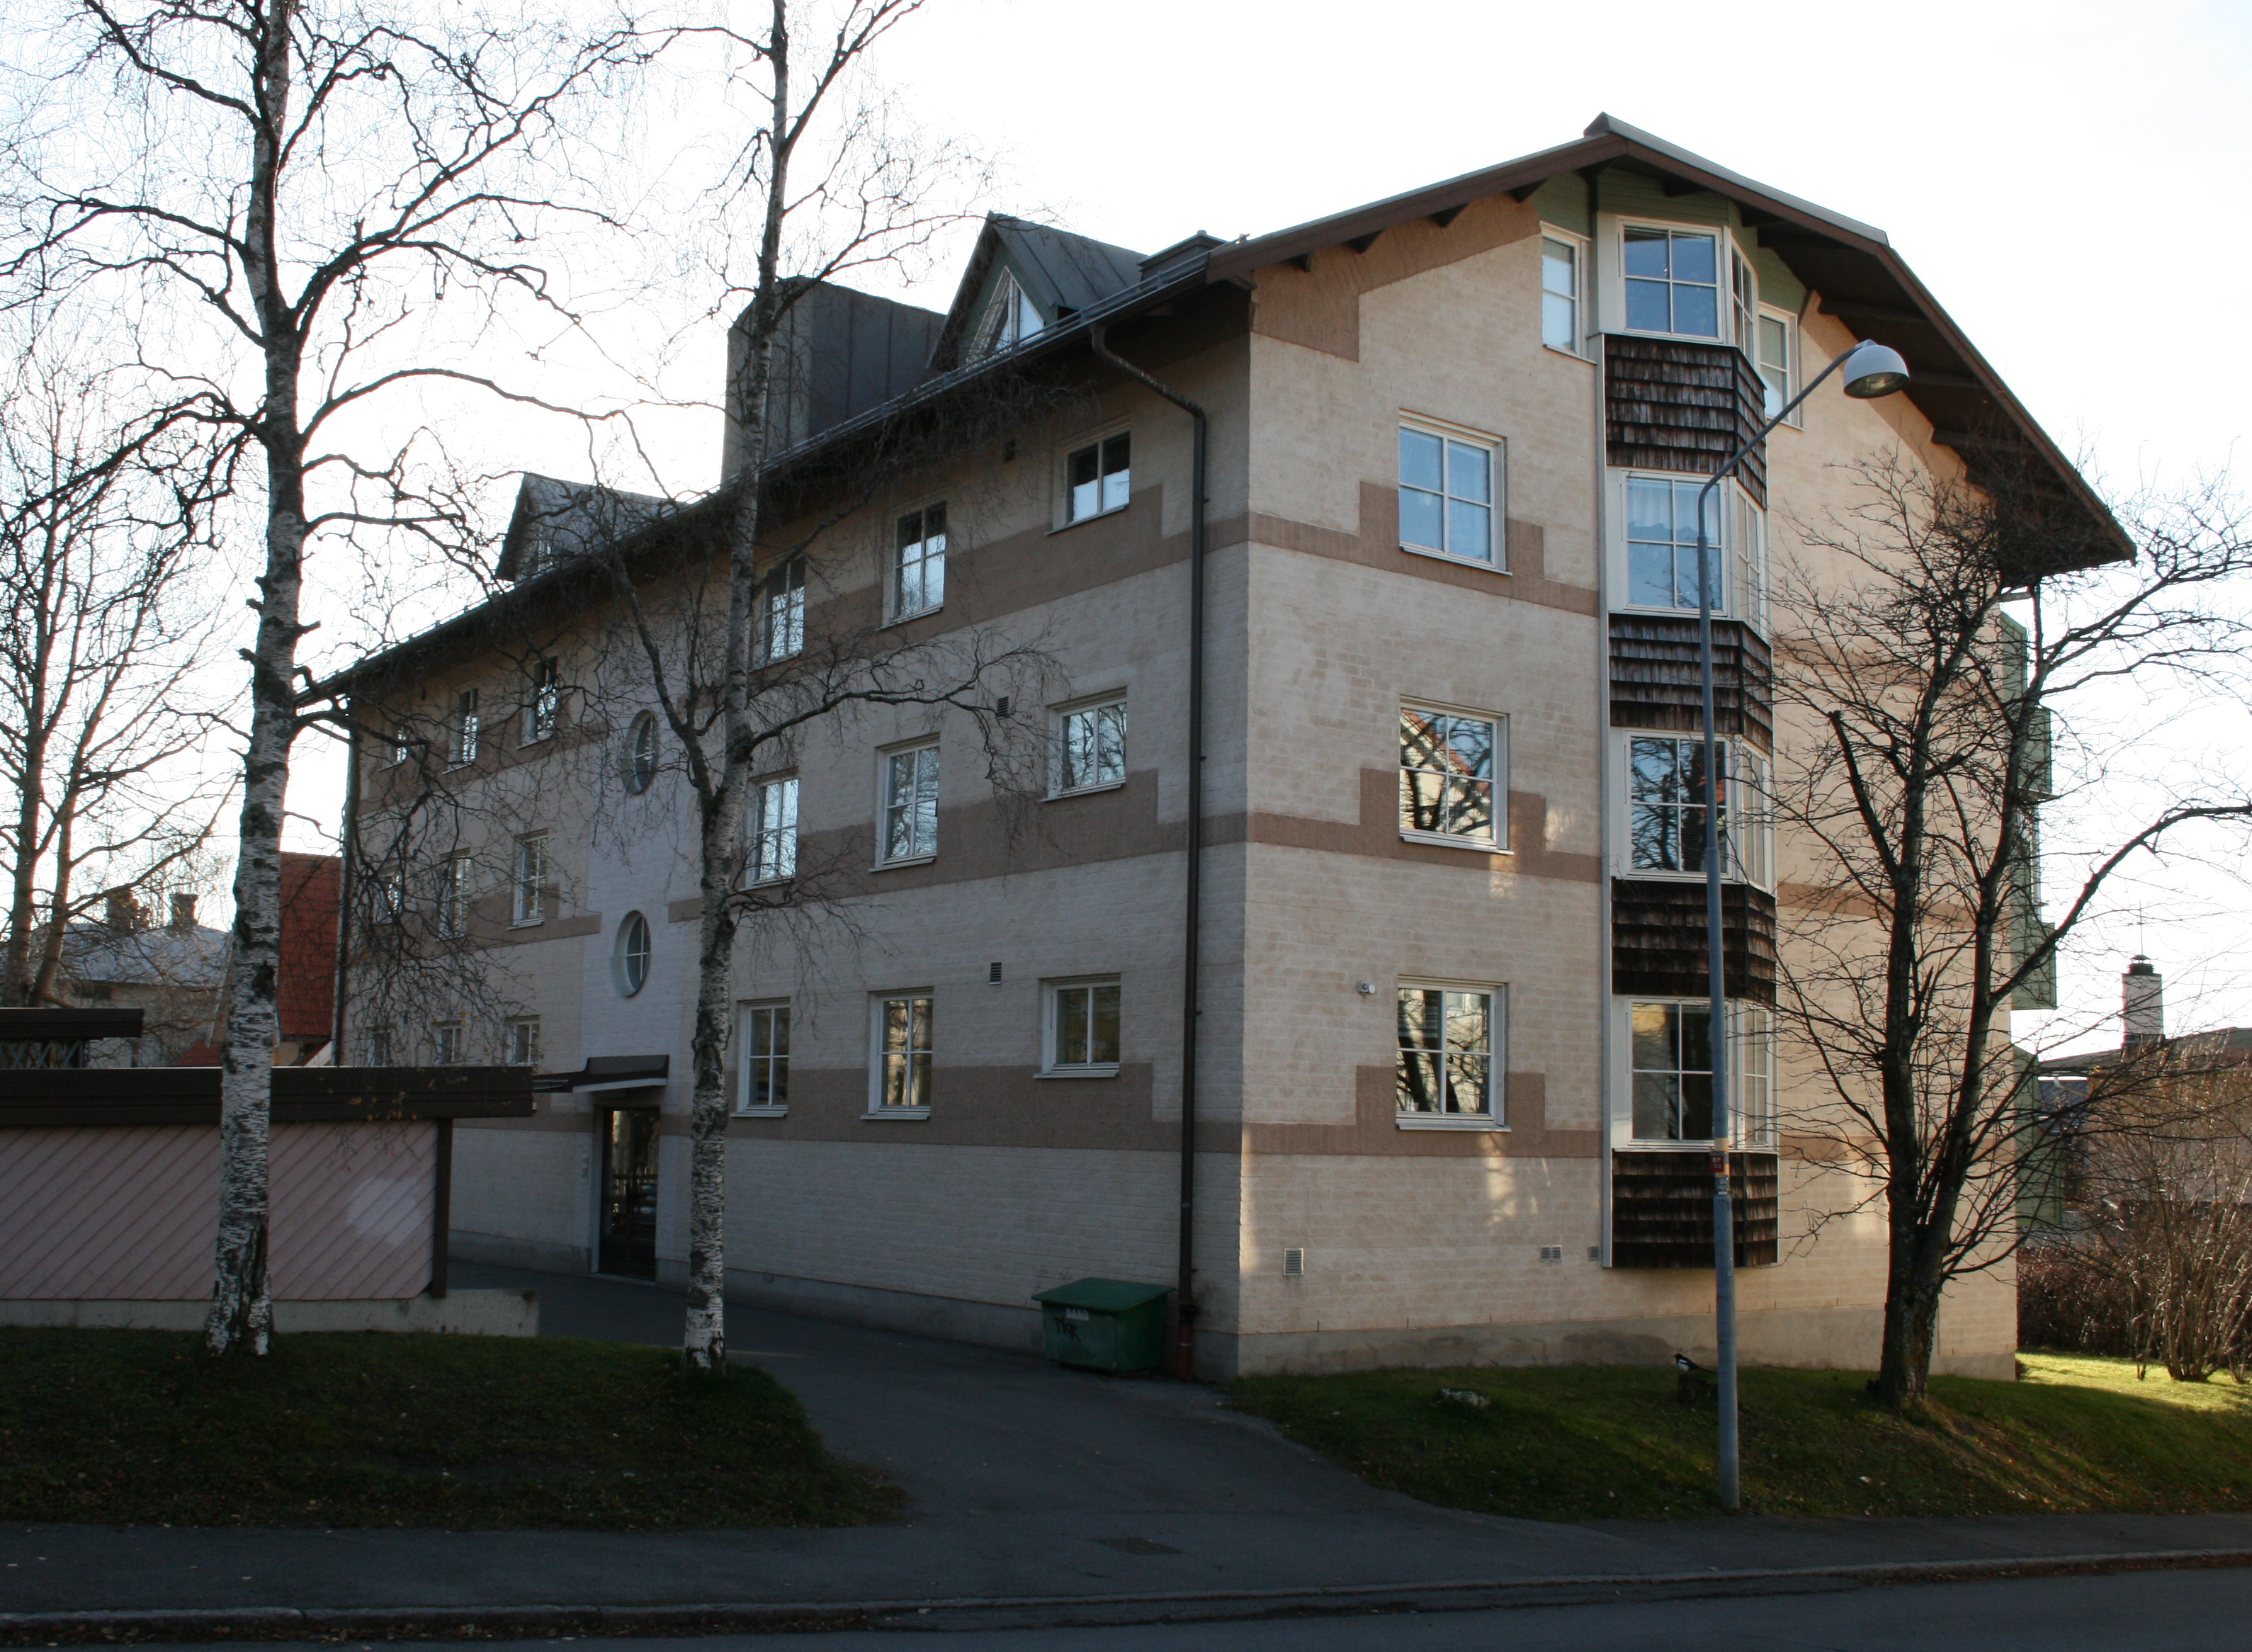 Tallarna 2, hus 1. Fasader mot Litsvägen/Brogränd.